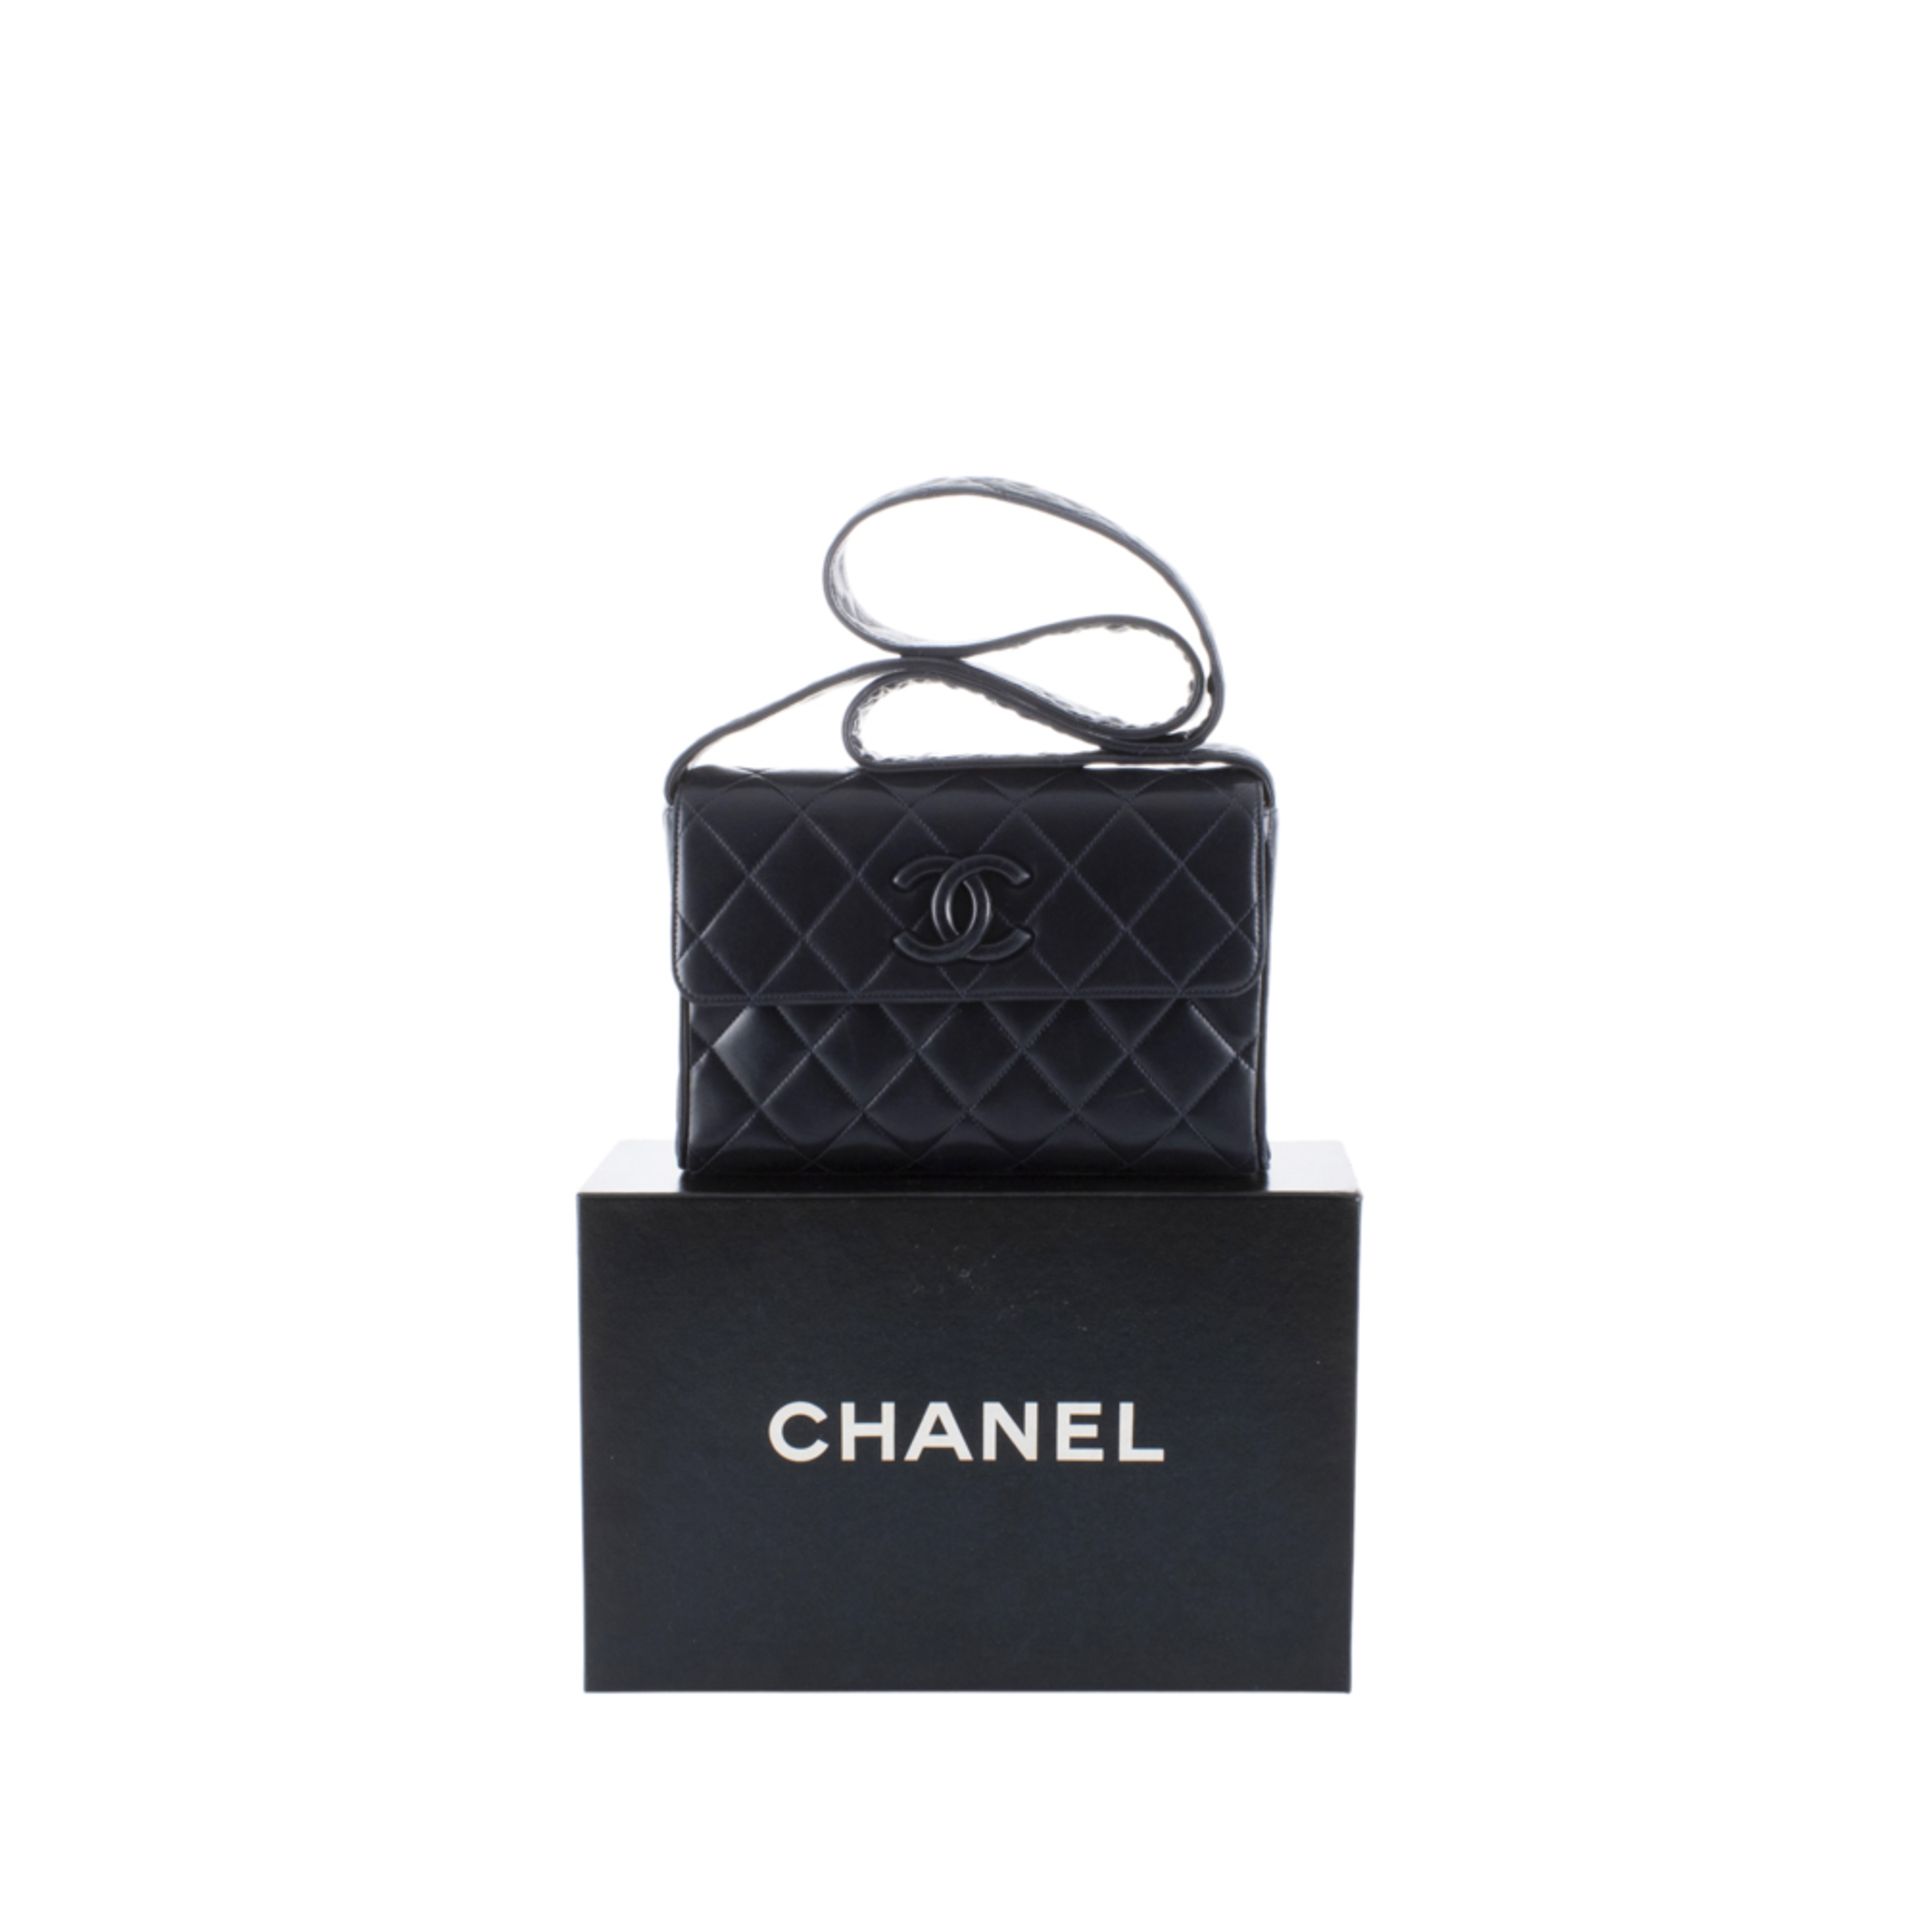 Chanel vintage shoulder bag - Image 3 of 3